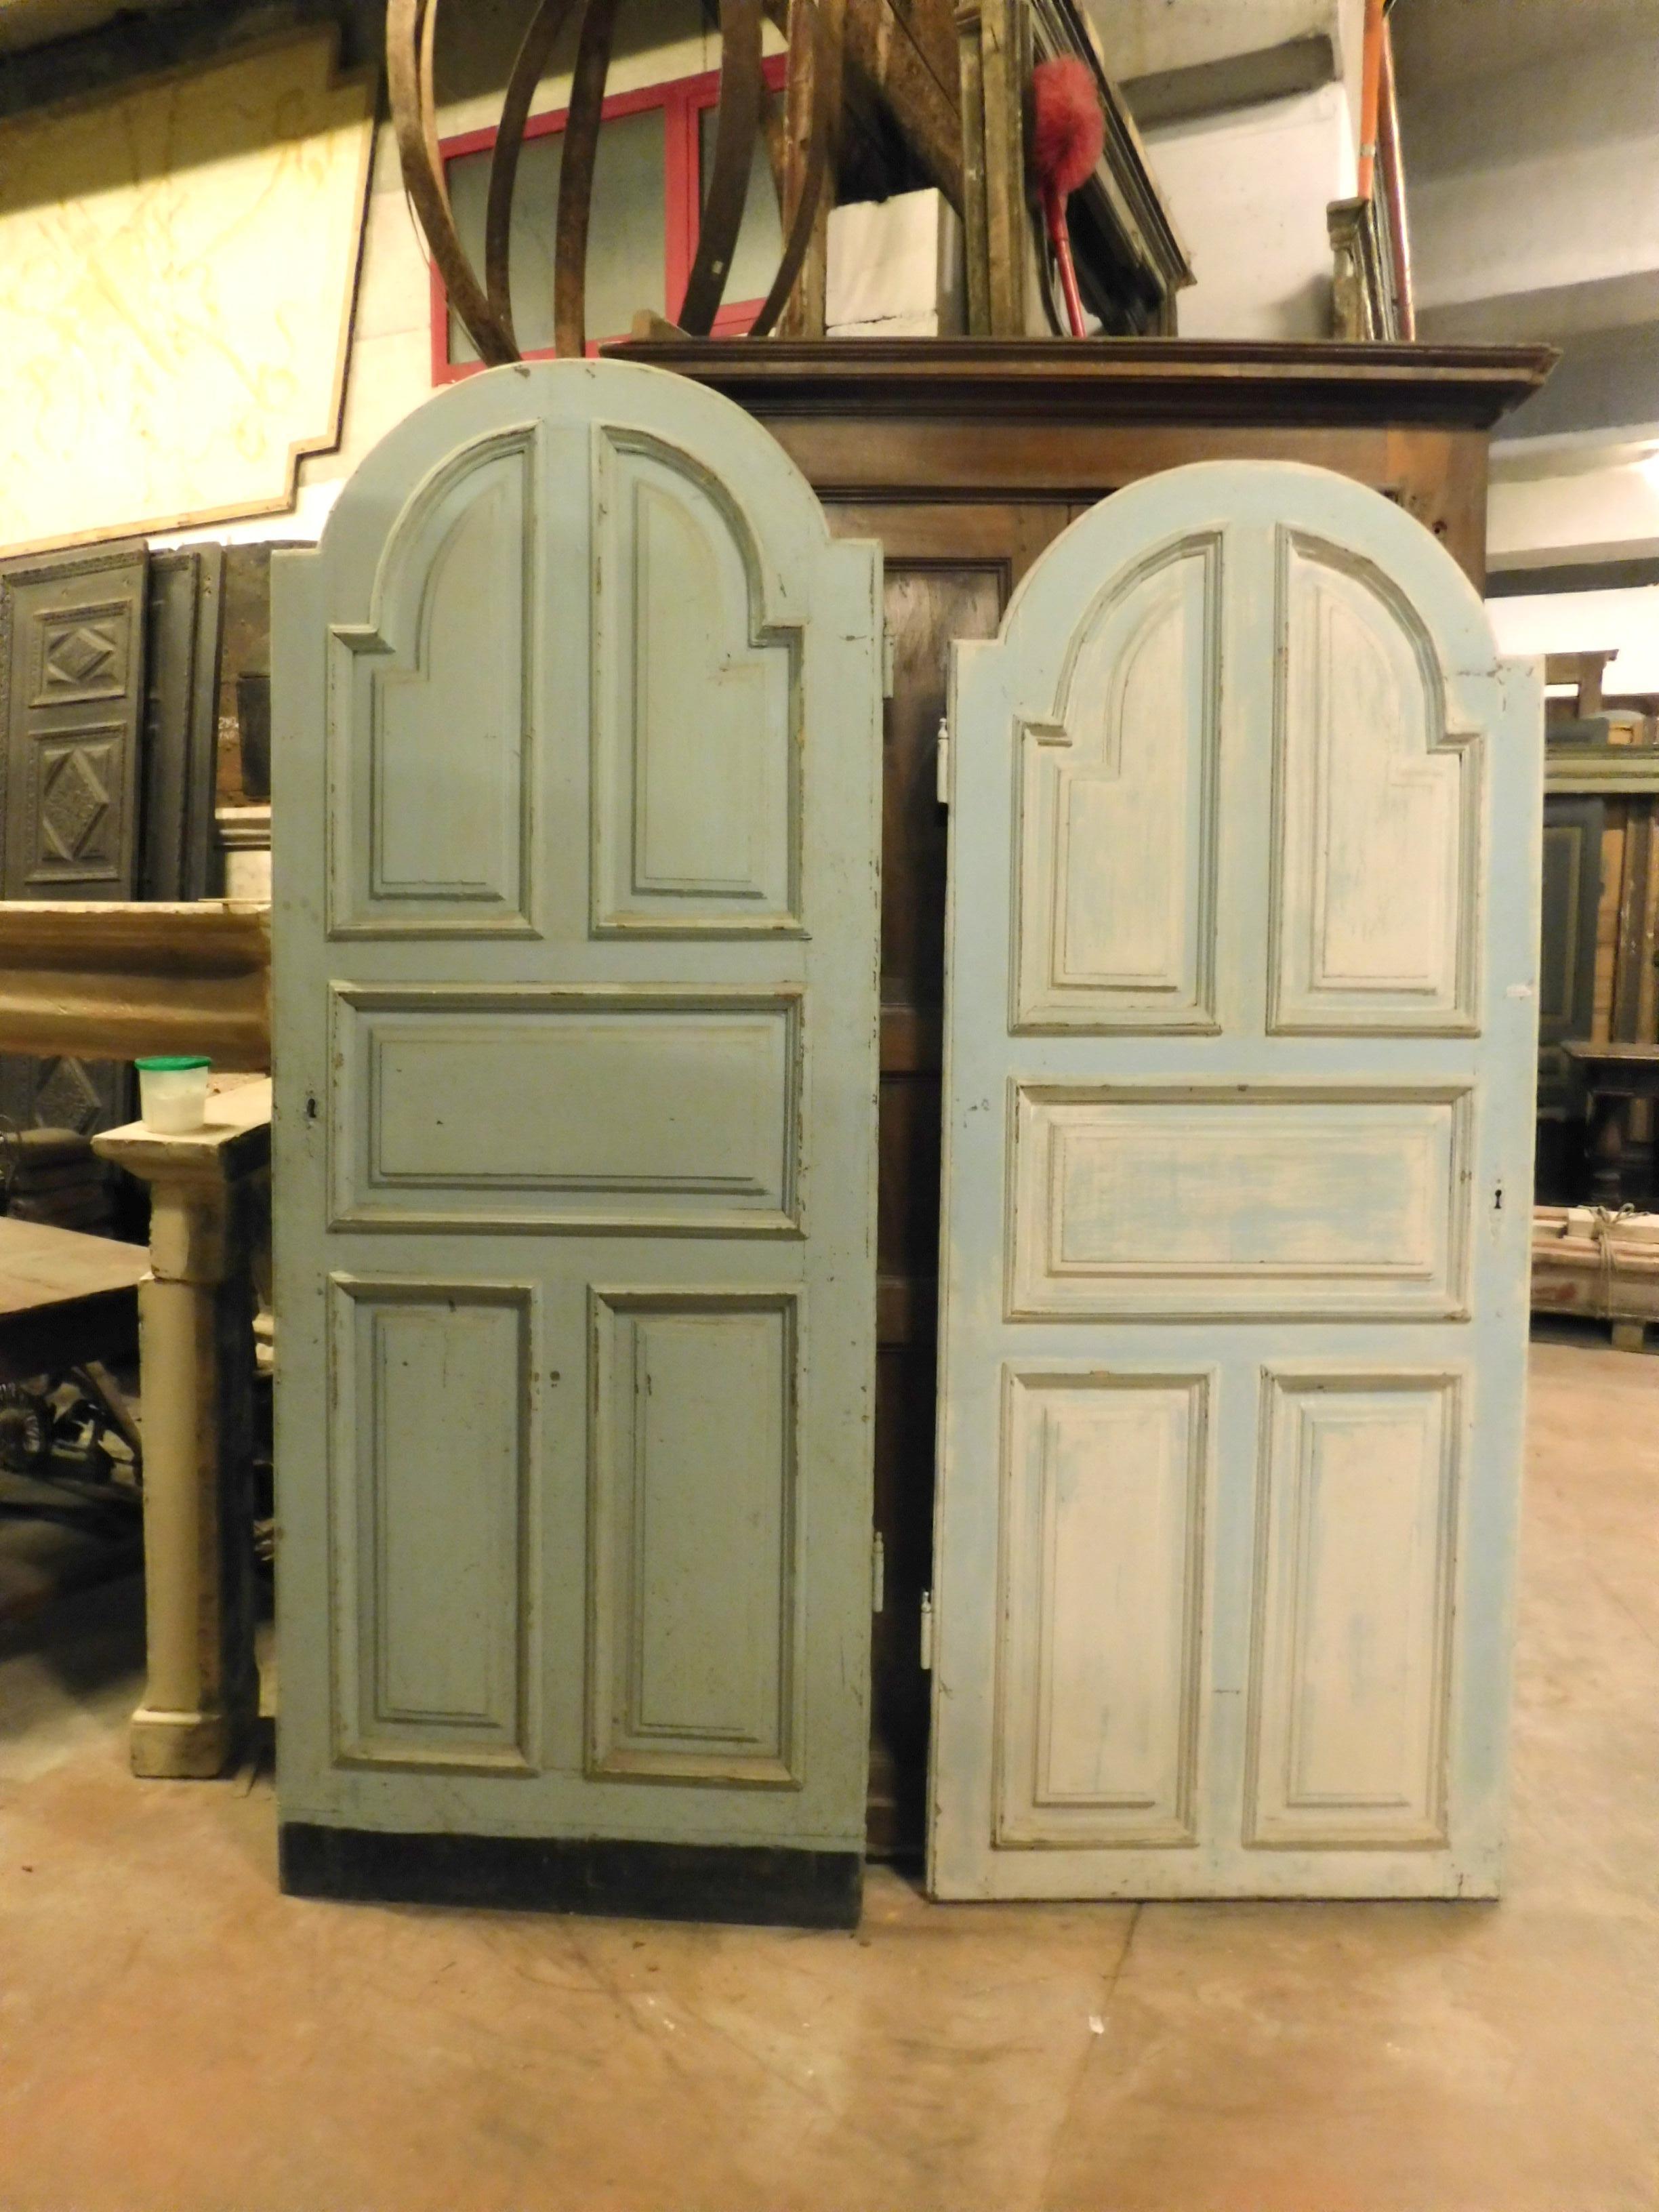 Paar alte provenzalische Innentüren mit geschnitzten, blau bemalten Paneelen, eines davon war ein Paneel (das unterste), gebaut im späten 19. Jahrhundert in Südfrankreich.
Zarte und elegante Farbe, auch geeignet für die Einrichtung, wie Paneele